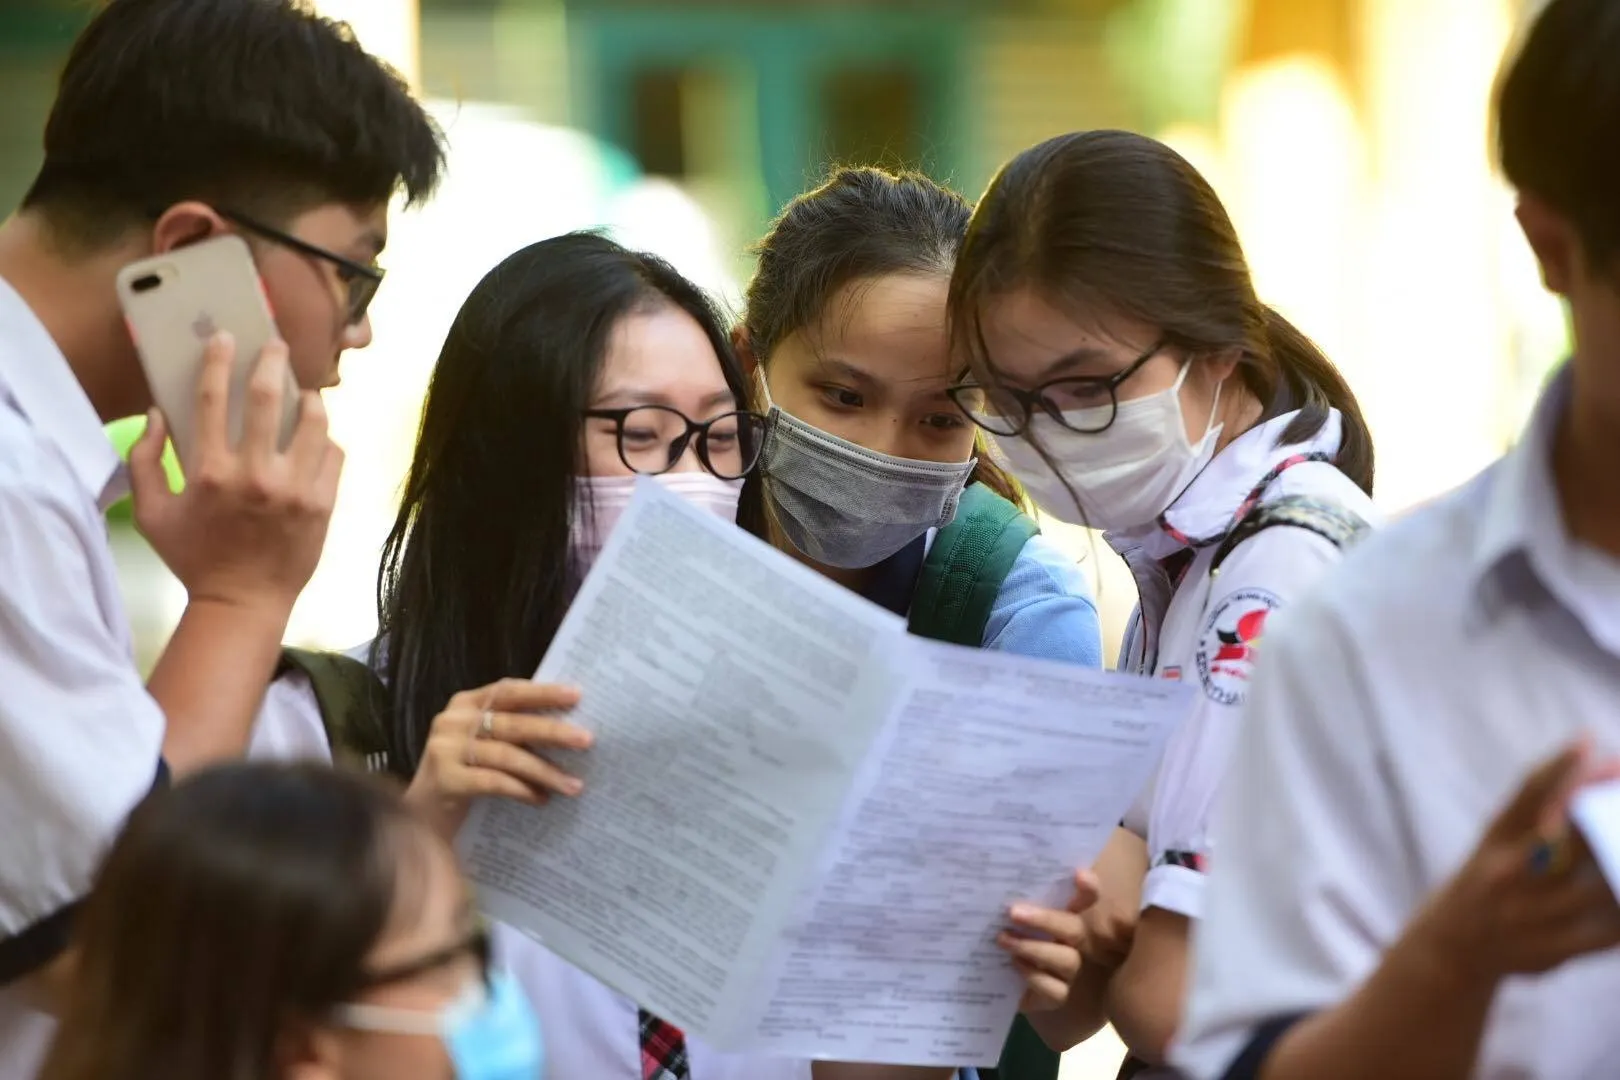 Đáp án đề thi lớp 10 môn Toán tỉnh Tuyên Quang 2022 chính xác nhất